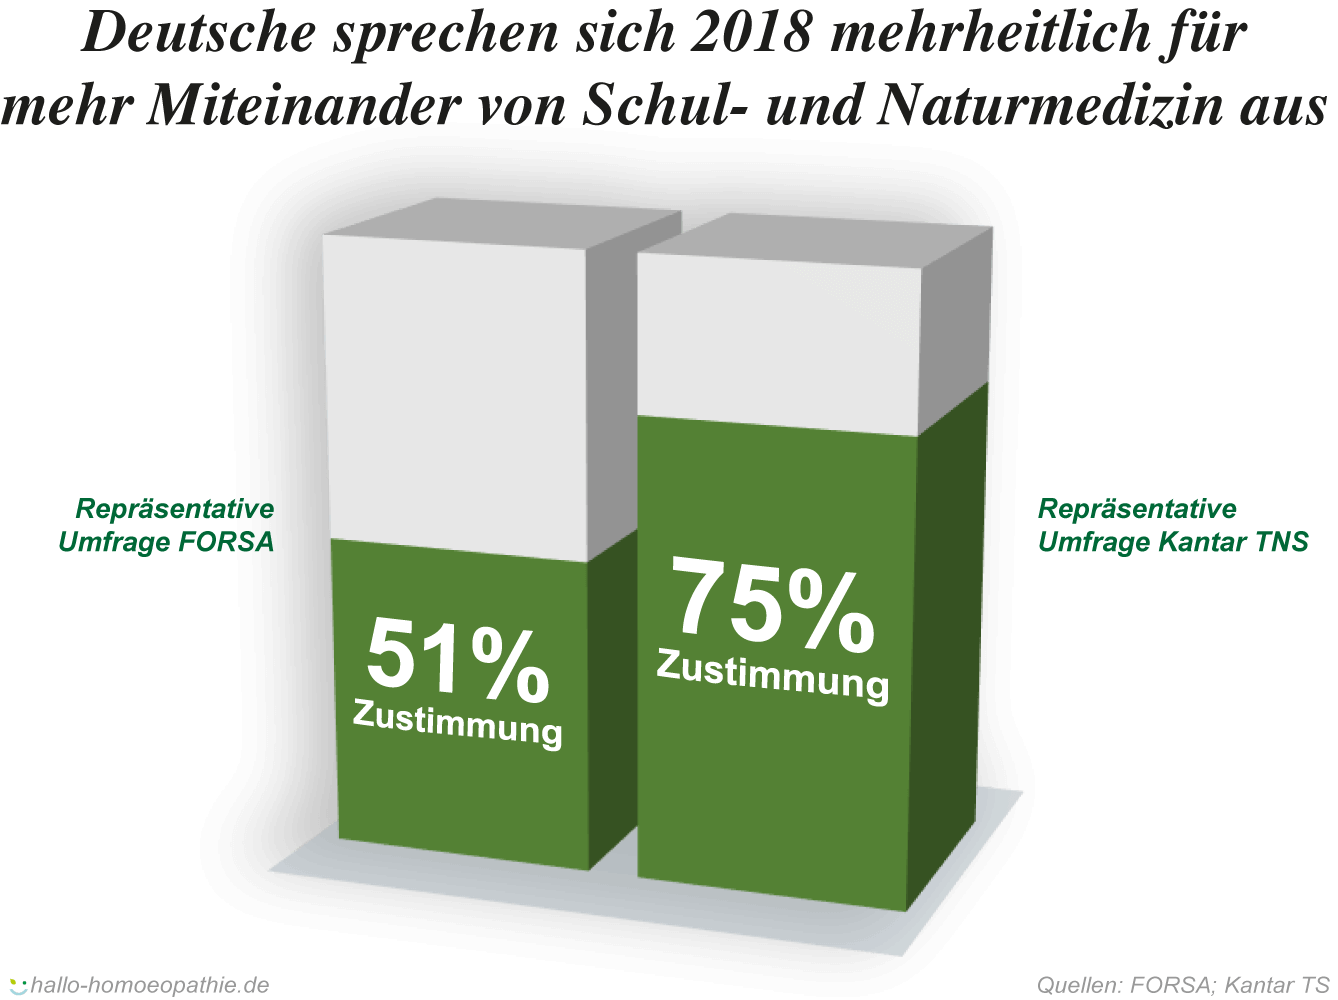 Deutsche sprechen sich 2018 für mehr Miteinander von Schul- und Naturmedizin aus